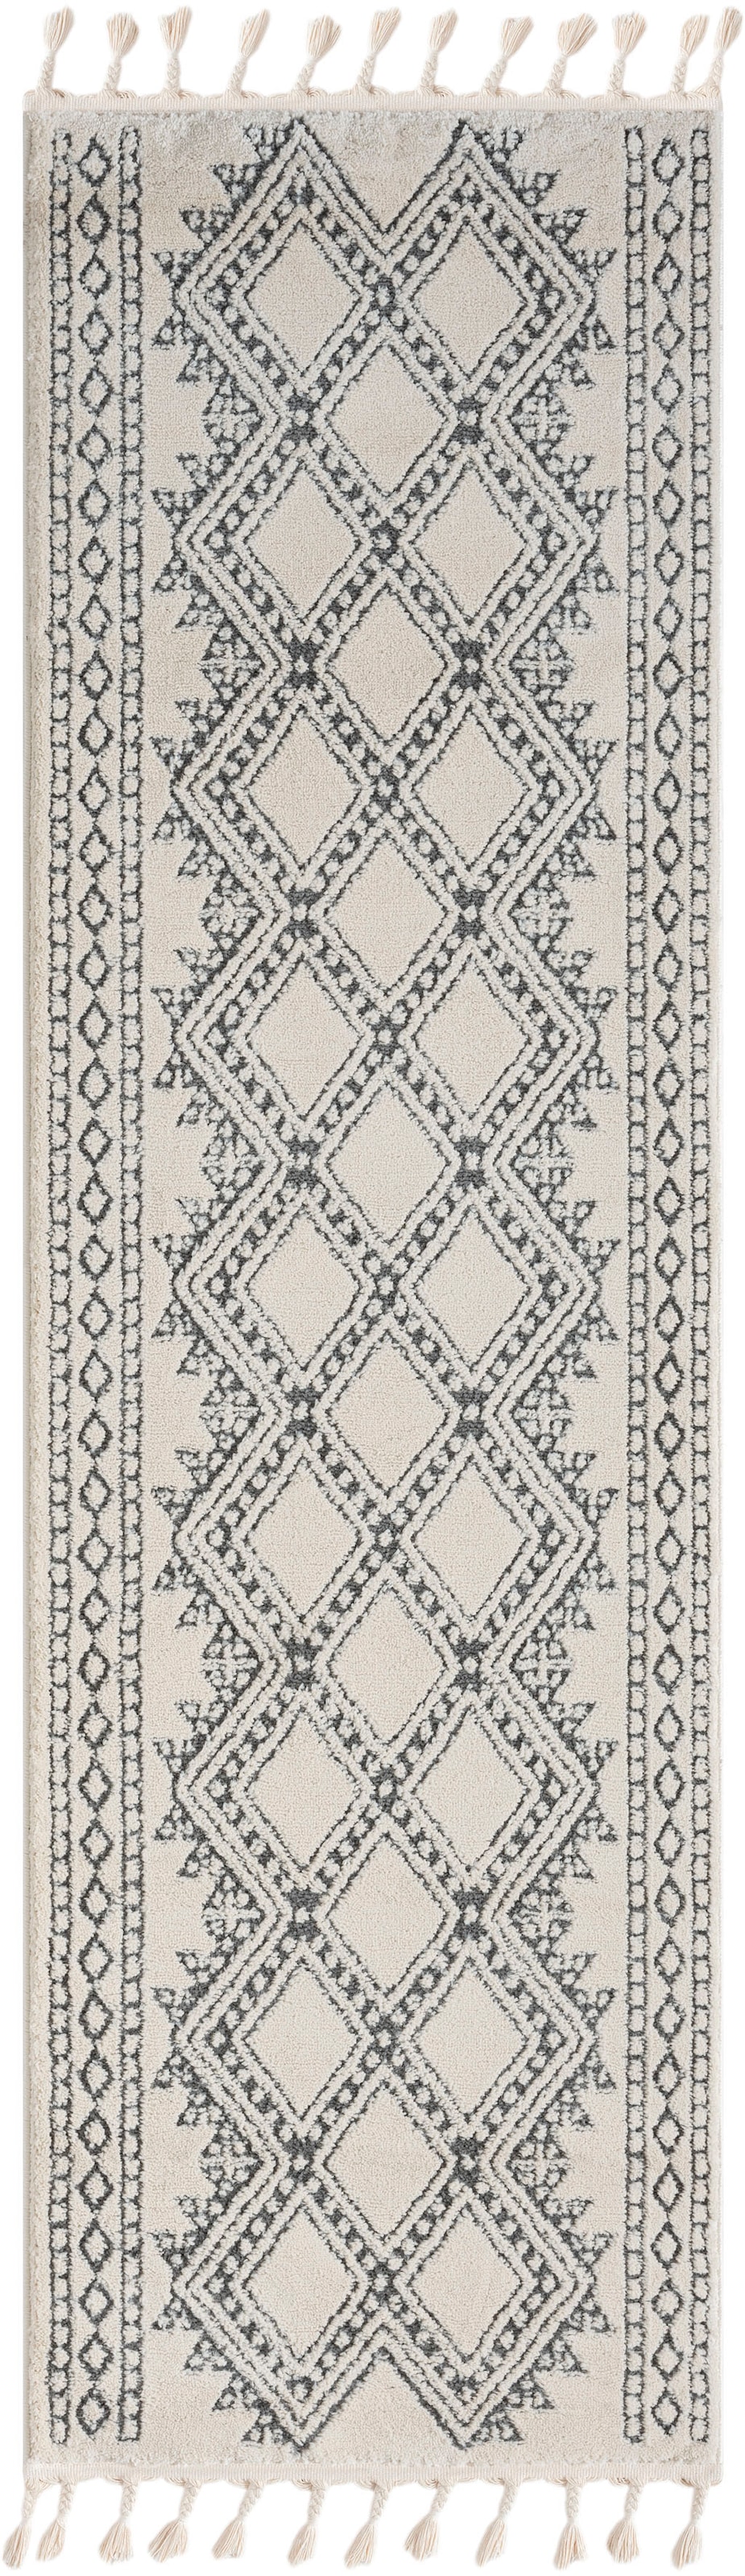 Myflair Möbel & Accessoires Hochflor-Läufer »Moroccan Tradition«, rechteckig, modern, marokkanisches Design, flauschig weich durch Hochflor